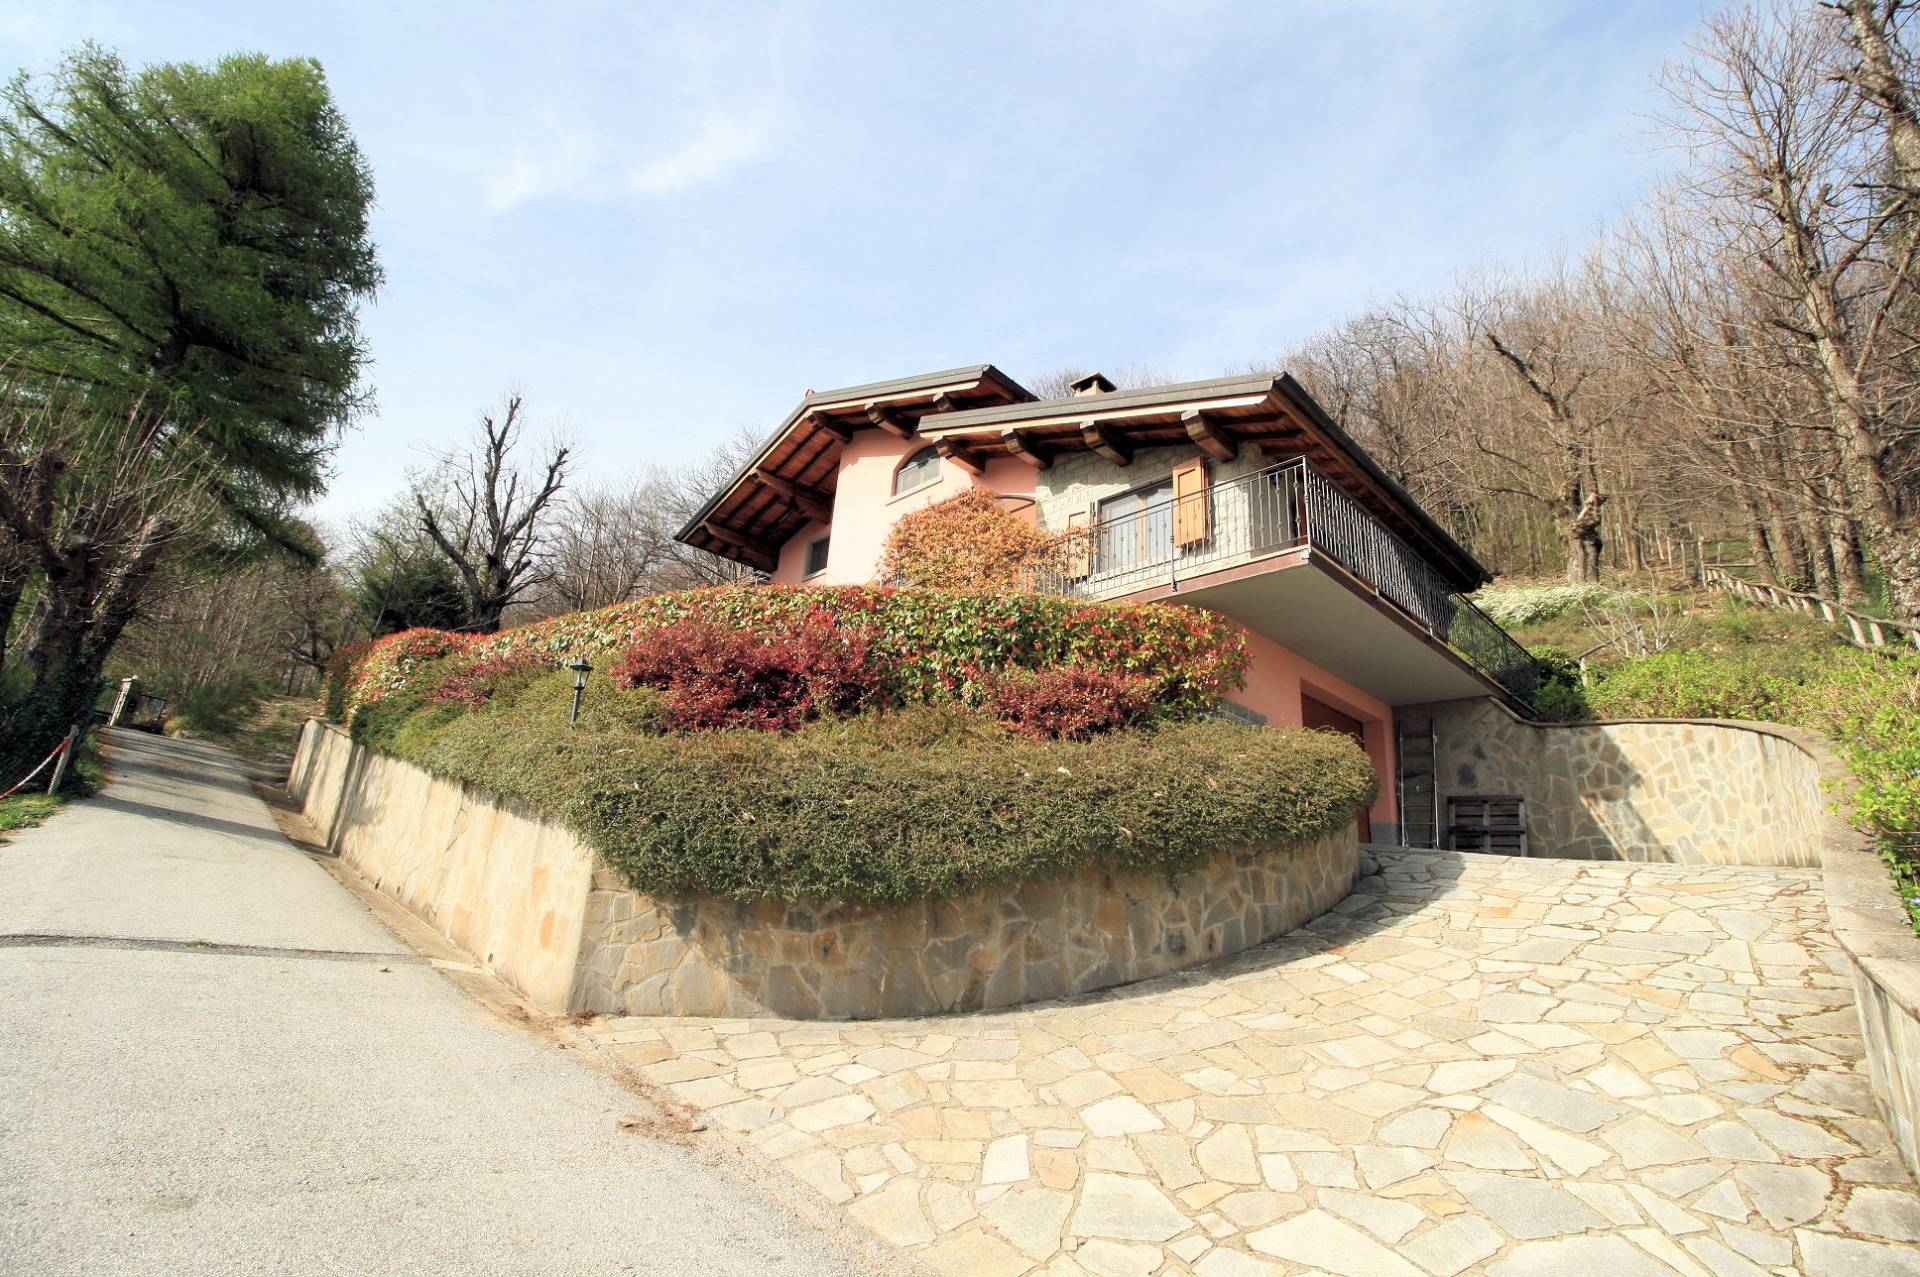 1513-Villa unifamiliare con giardino in posizione panoramica-Abetone Cutigliano-1 Agenzia Immobiliare ASIP